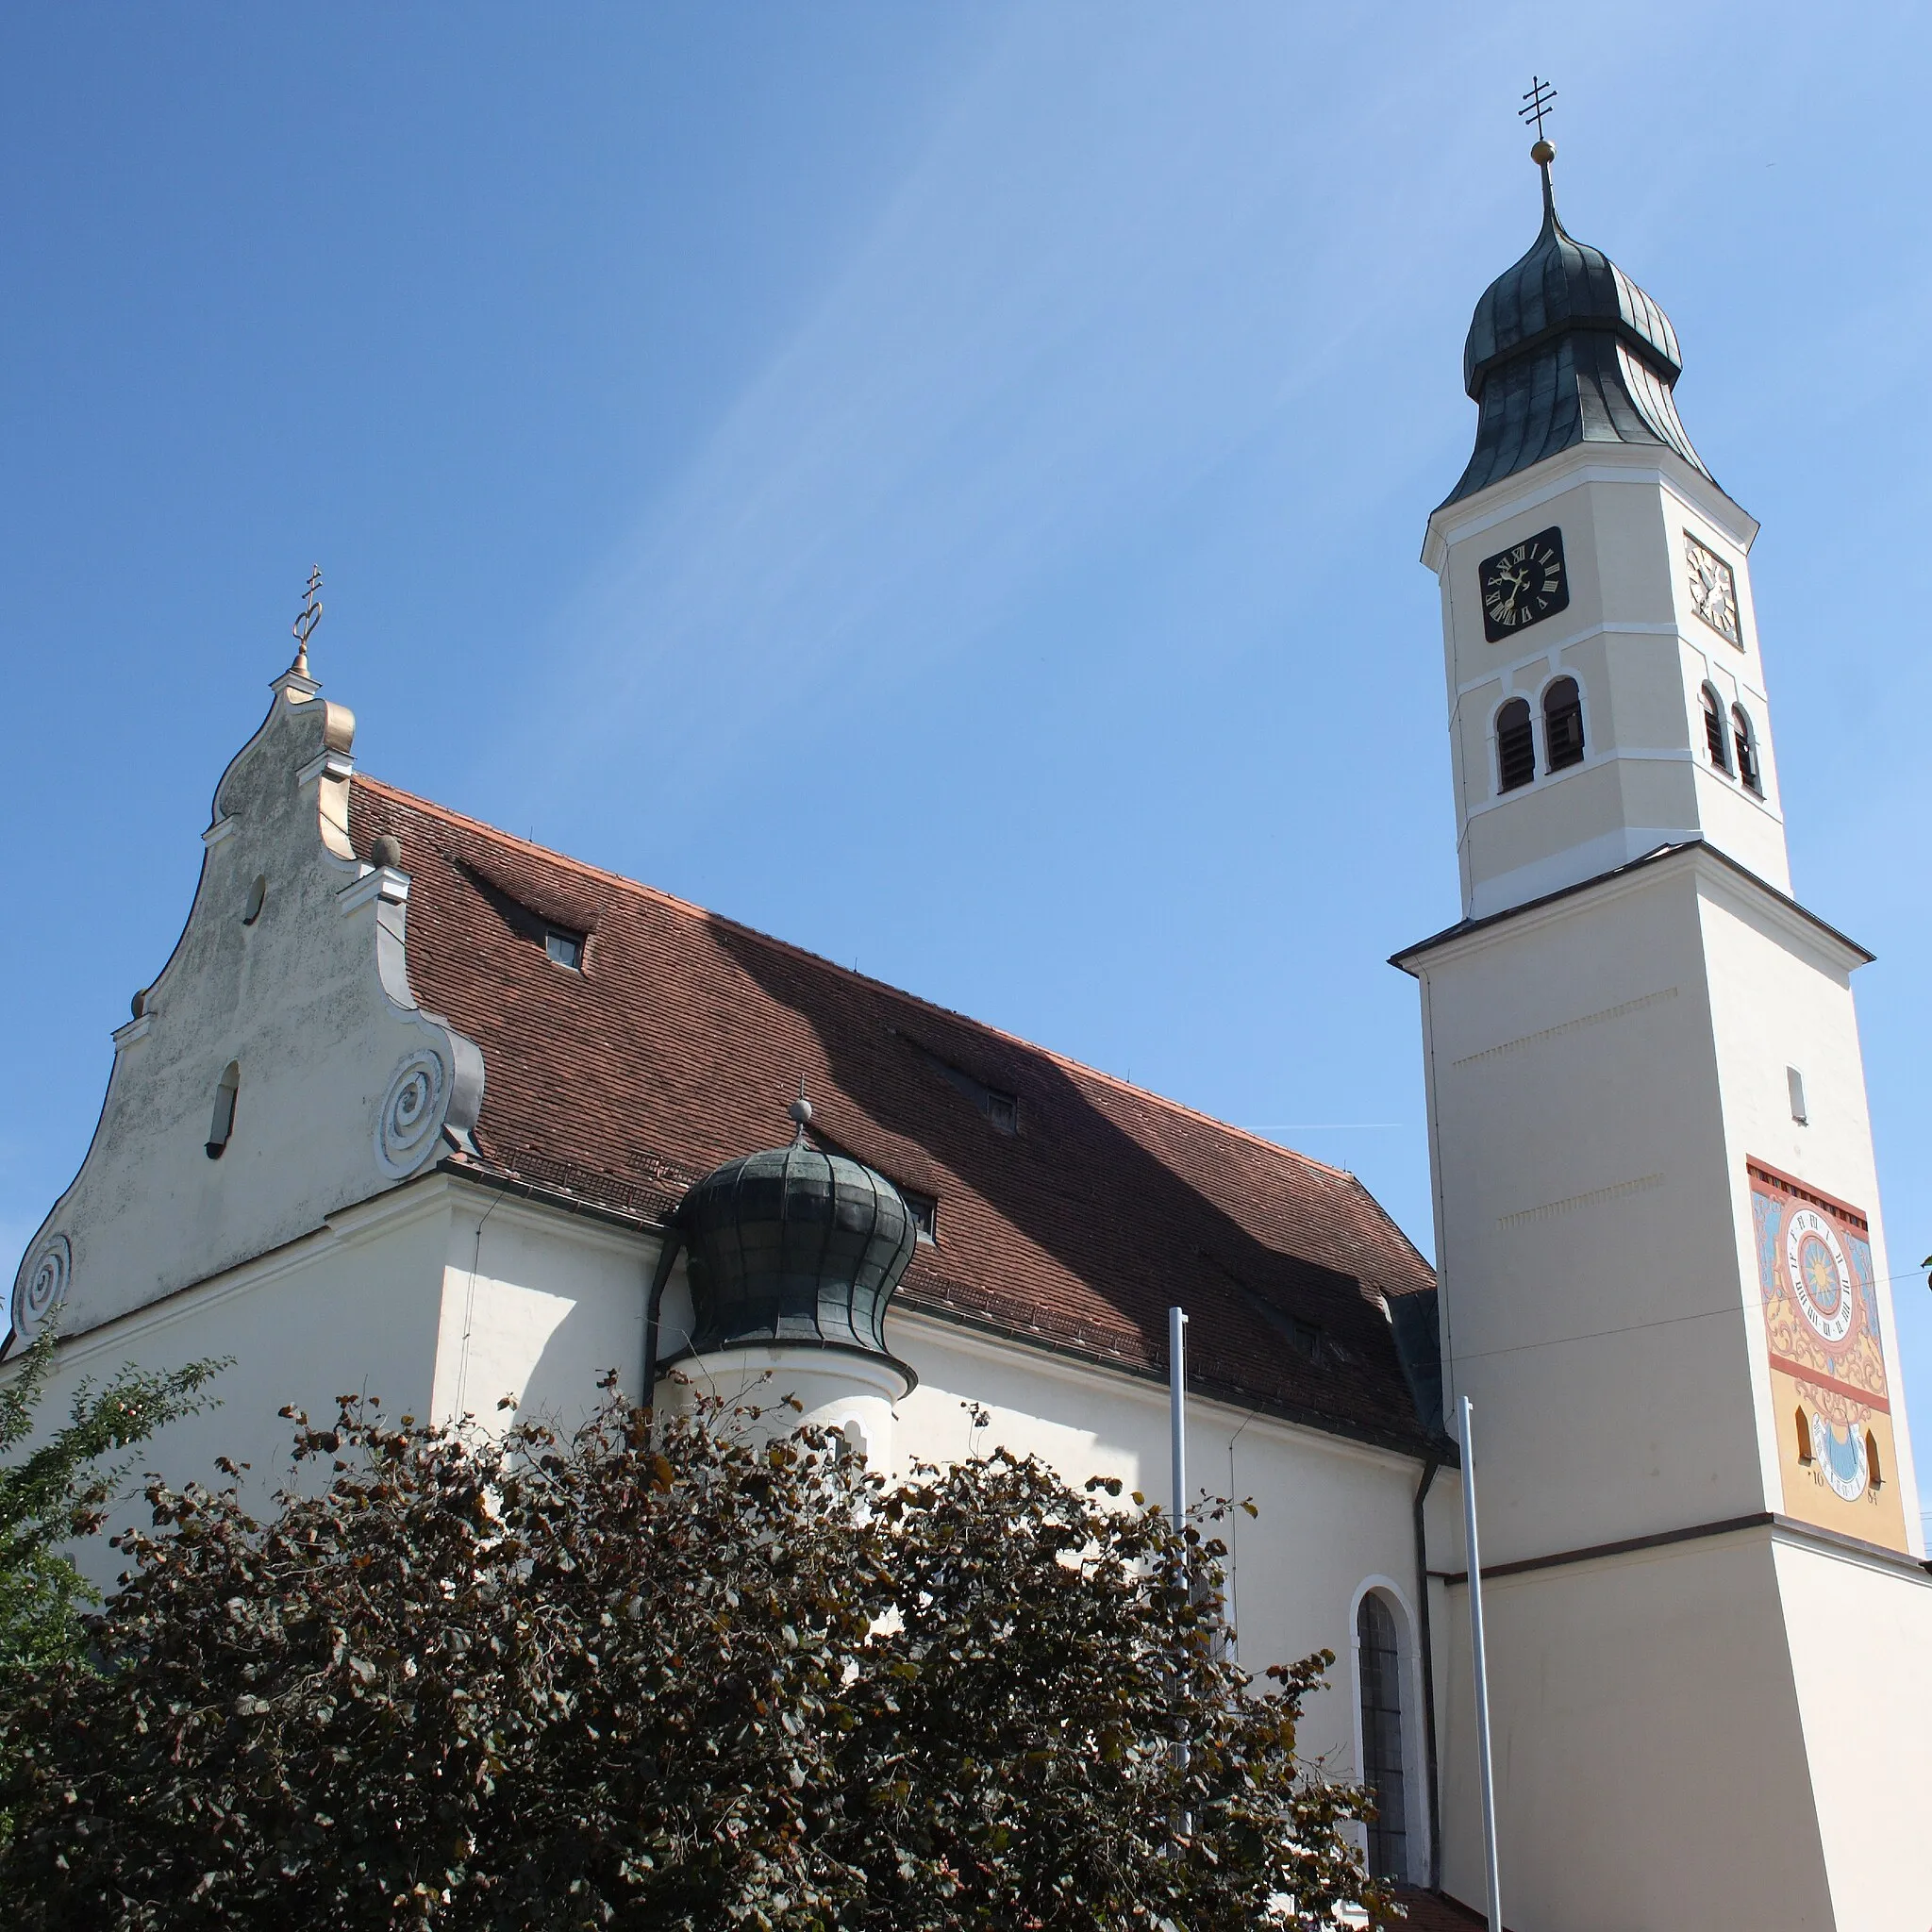 Photo showing: Katholische Pfarrkirche St. Blasius in Fristingen, einem Stadtteil von Dillingen an der Donau im Landkreis Dillingen an der Donau (Bayern), Westgiebel, Turm aus dem 13. Jh., mit Sonnenuhr